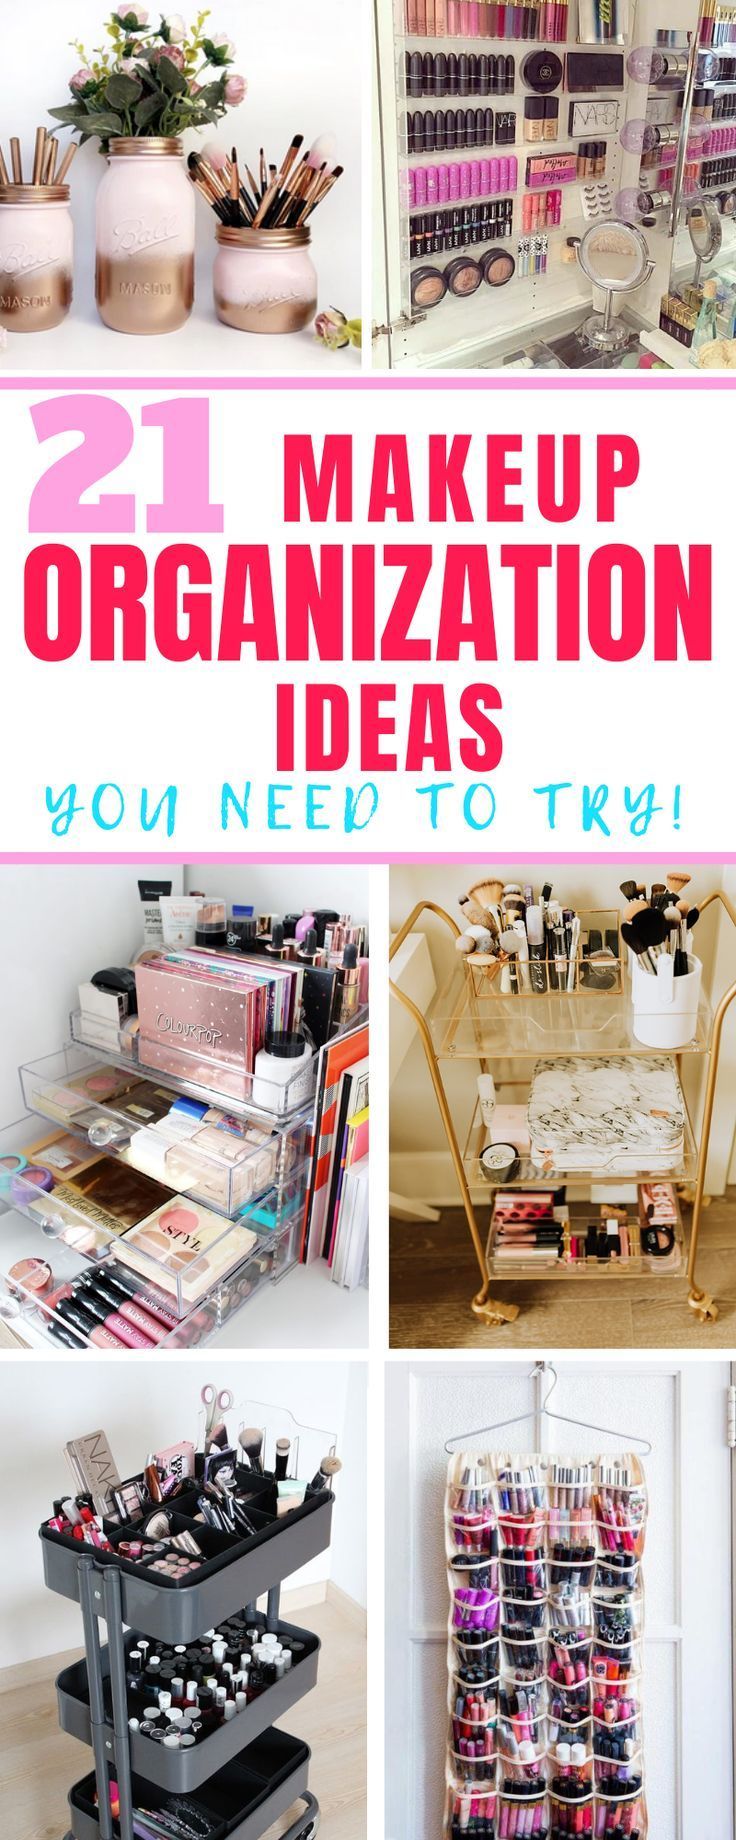 15 diy Organization shelf ideas